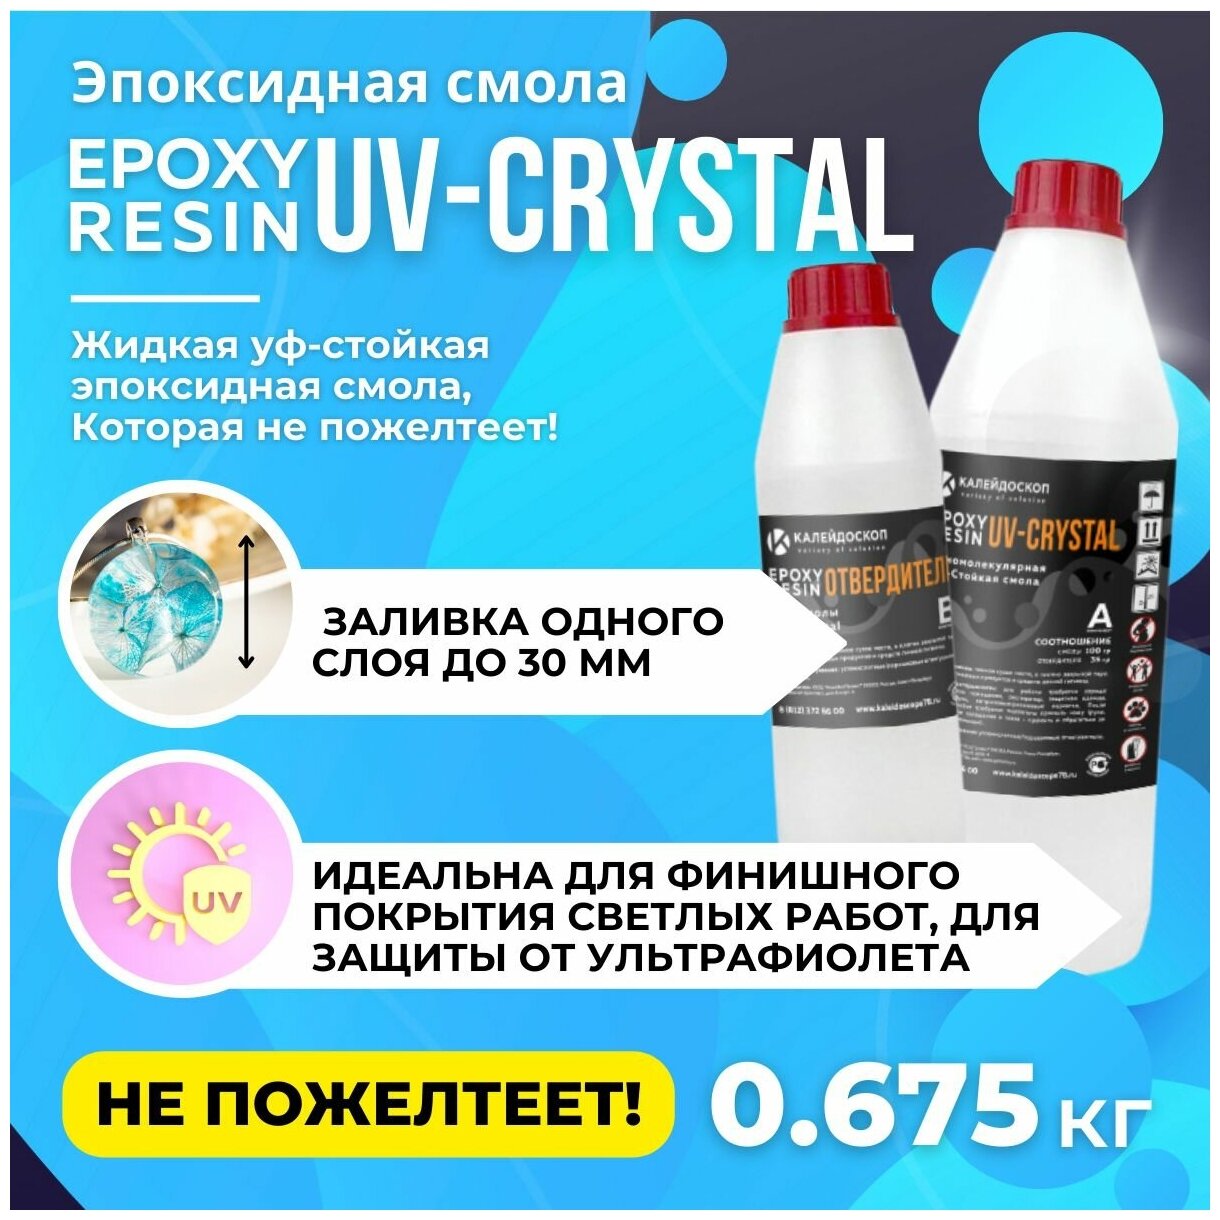 Набор Эпоксидная смола "UV-Crystal" для творчества жидкая, уф-стойкая + отвердитель - 0.675 кг